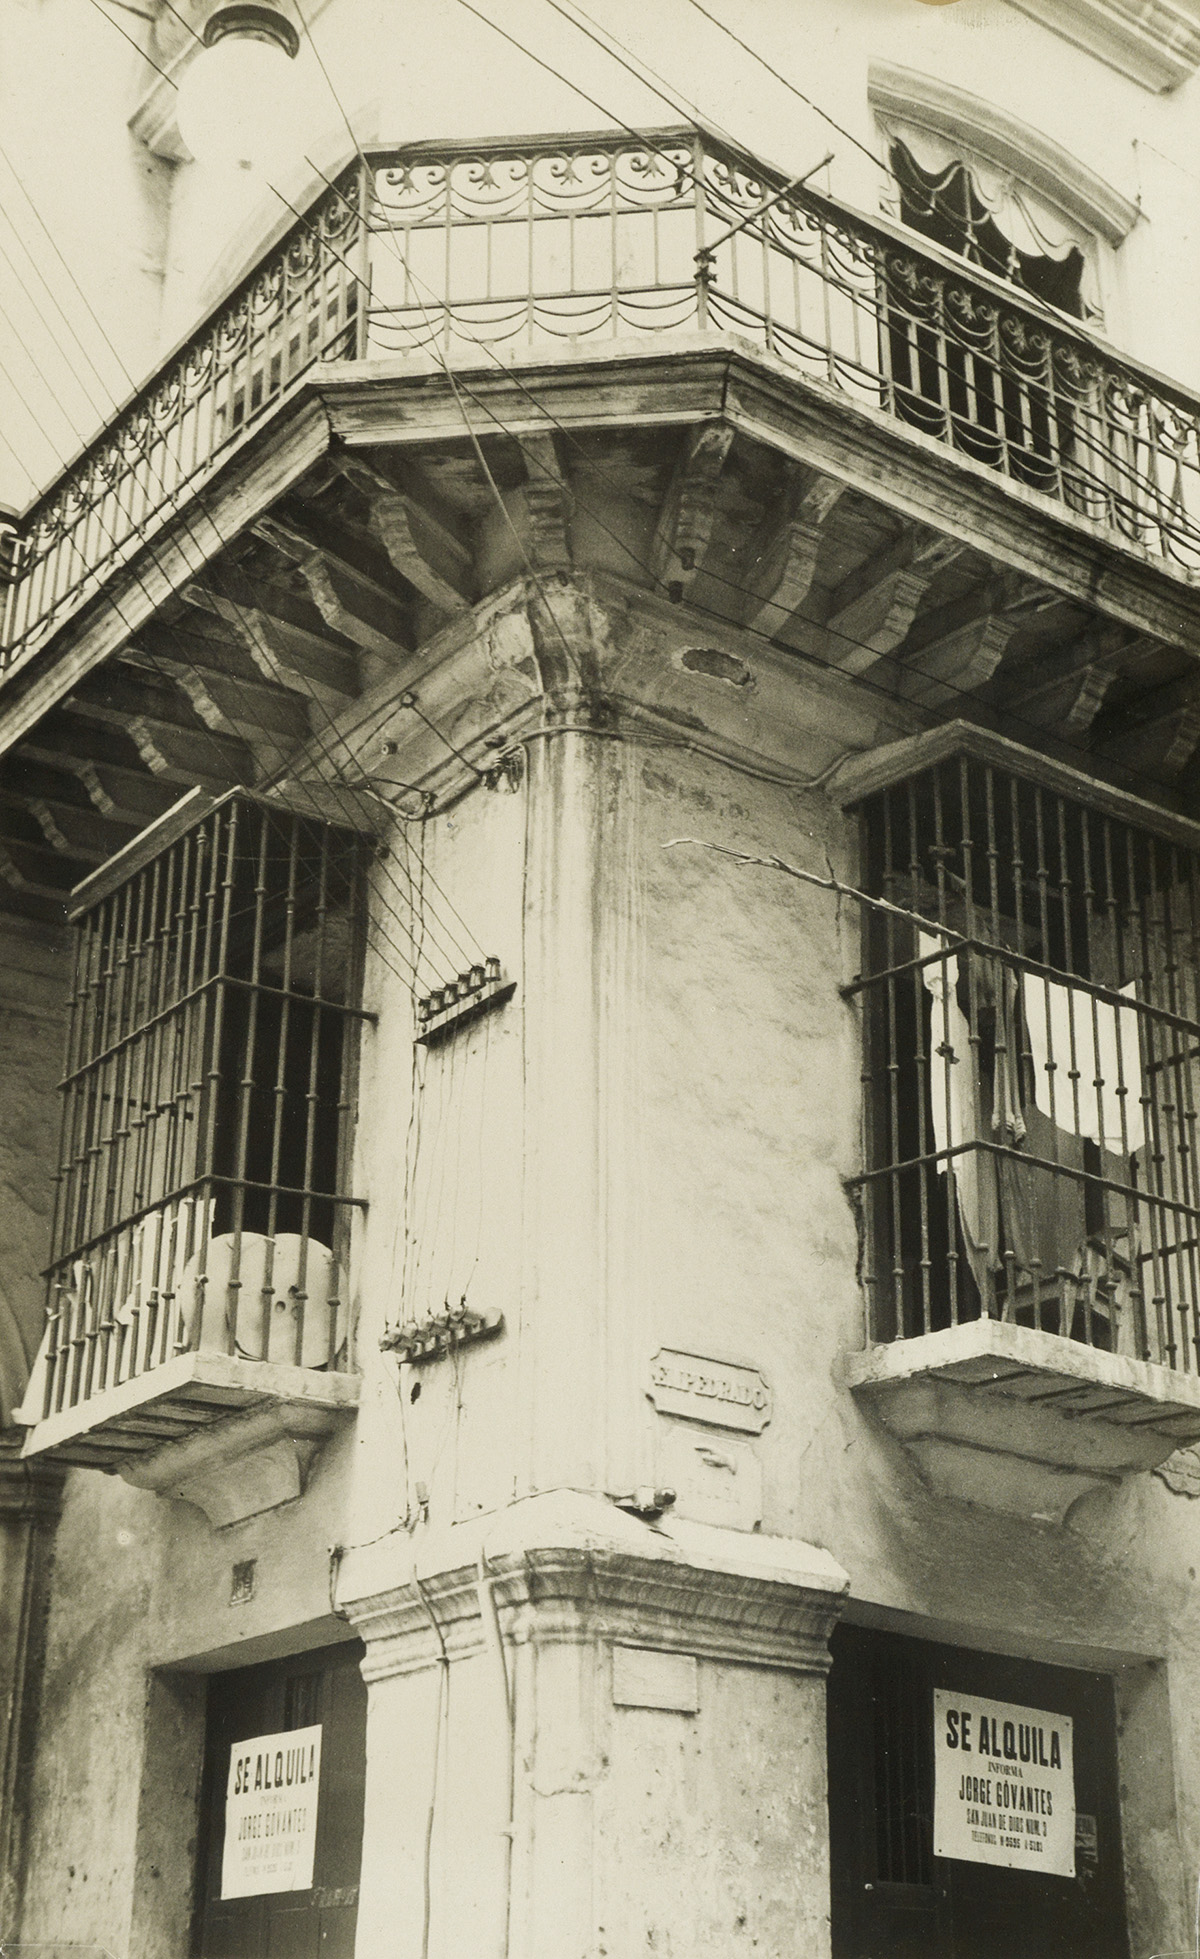 WALKER EVANS (1903-1975) Corner of Havana building with decorative iron grillwork, Cuba.